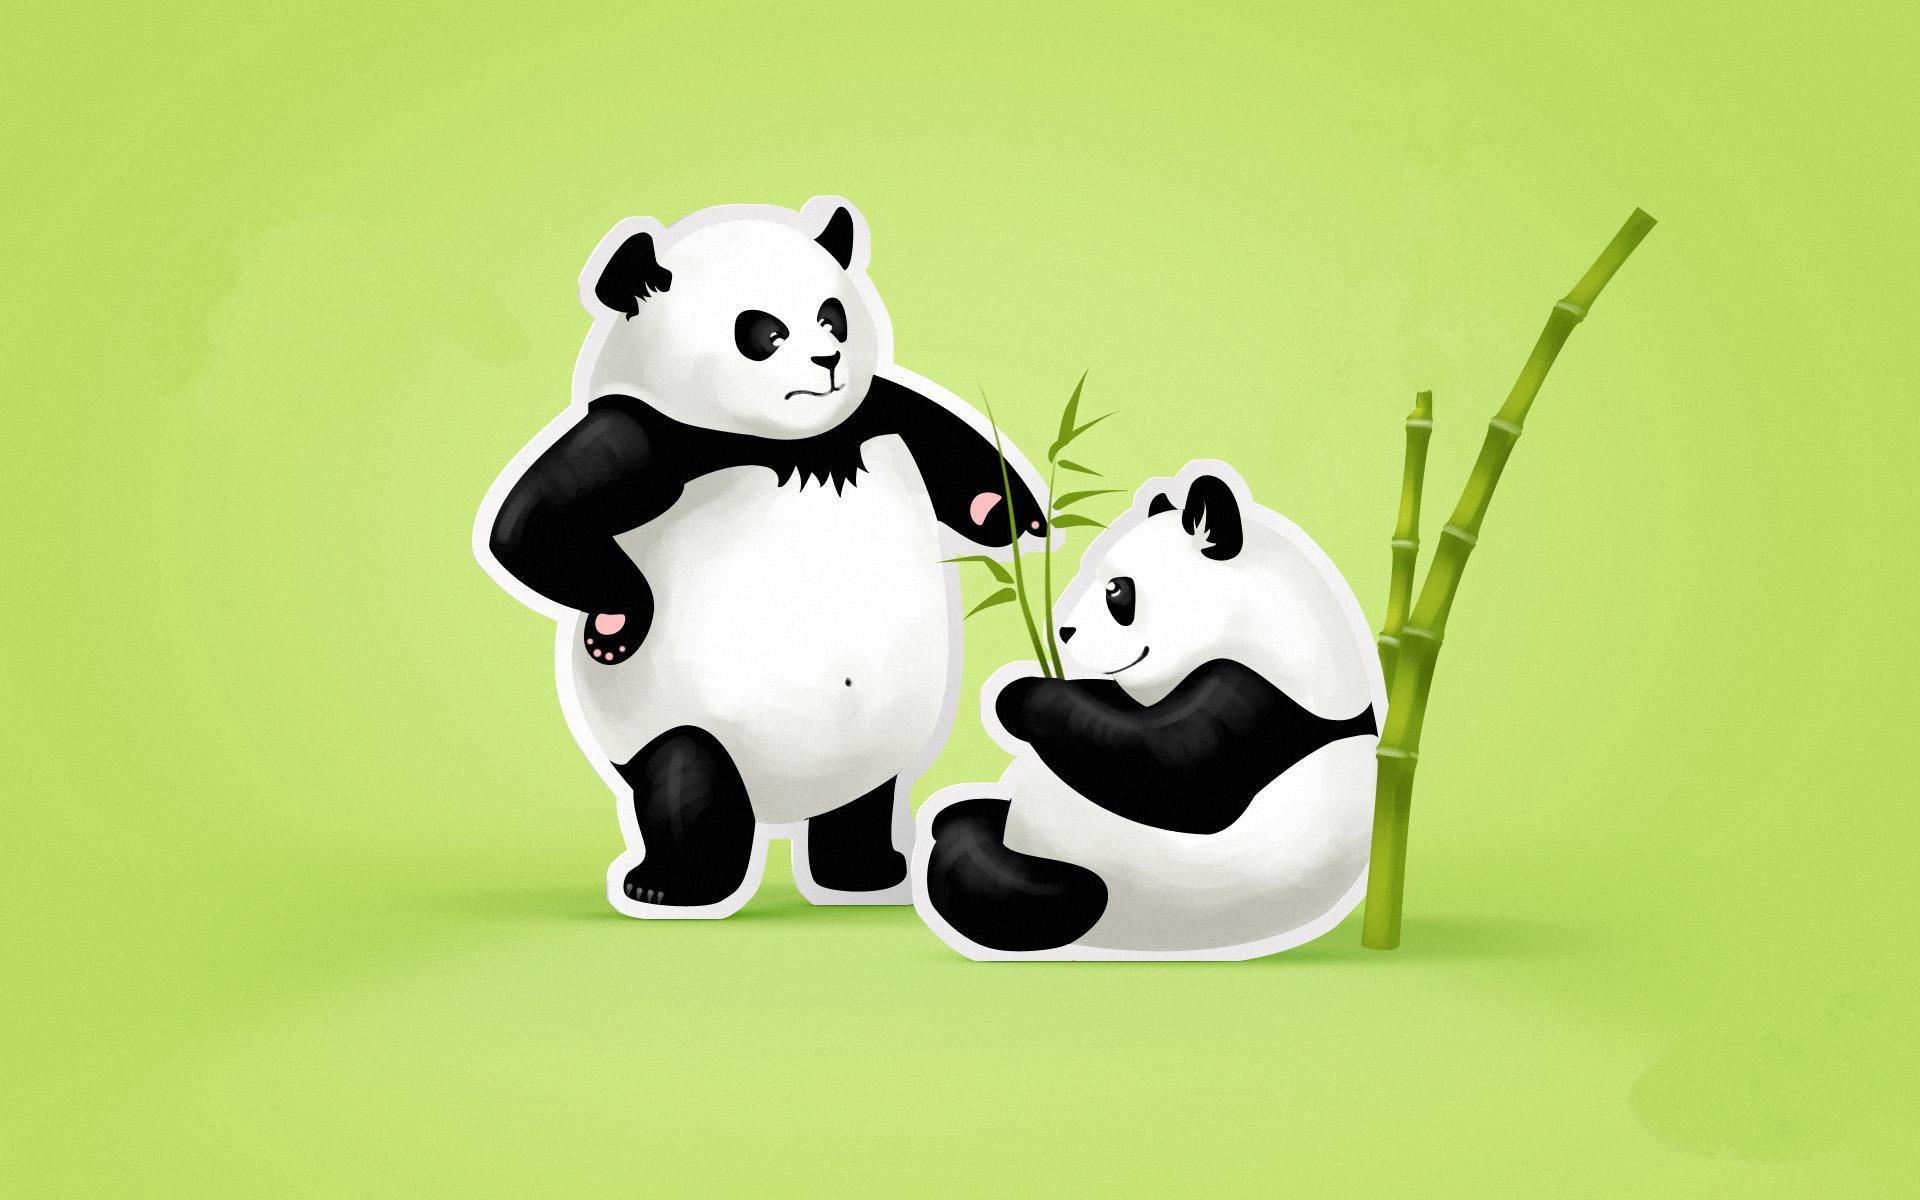 Ảnh nền gấu trúc Panda chibi dễ thương